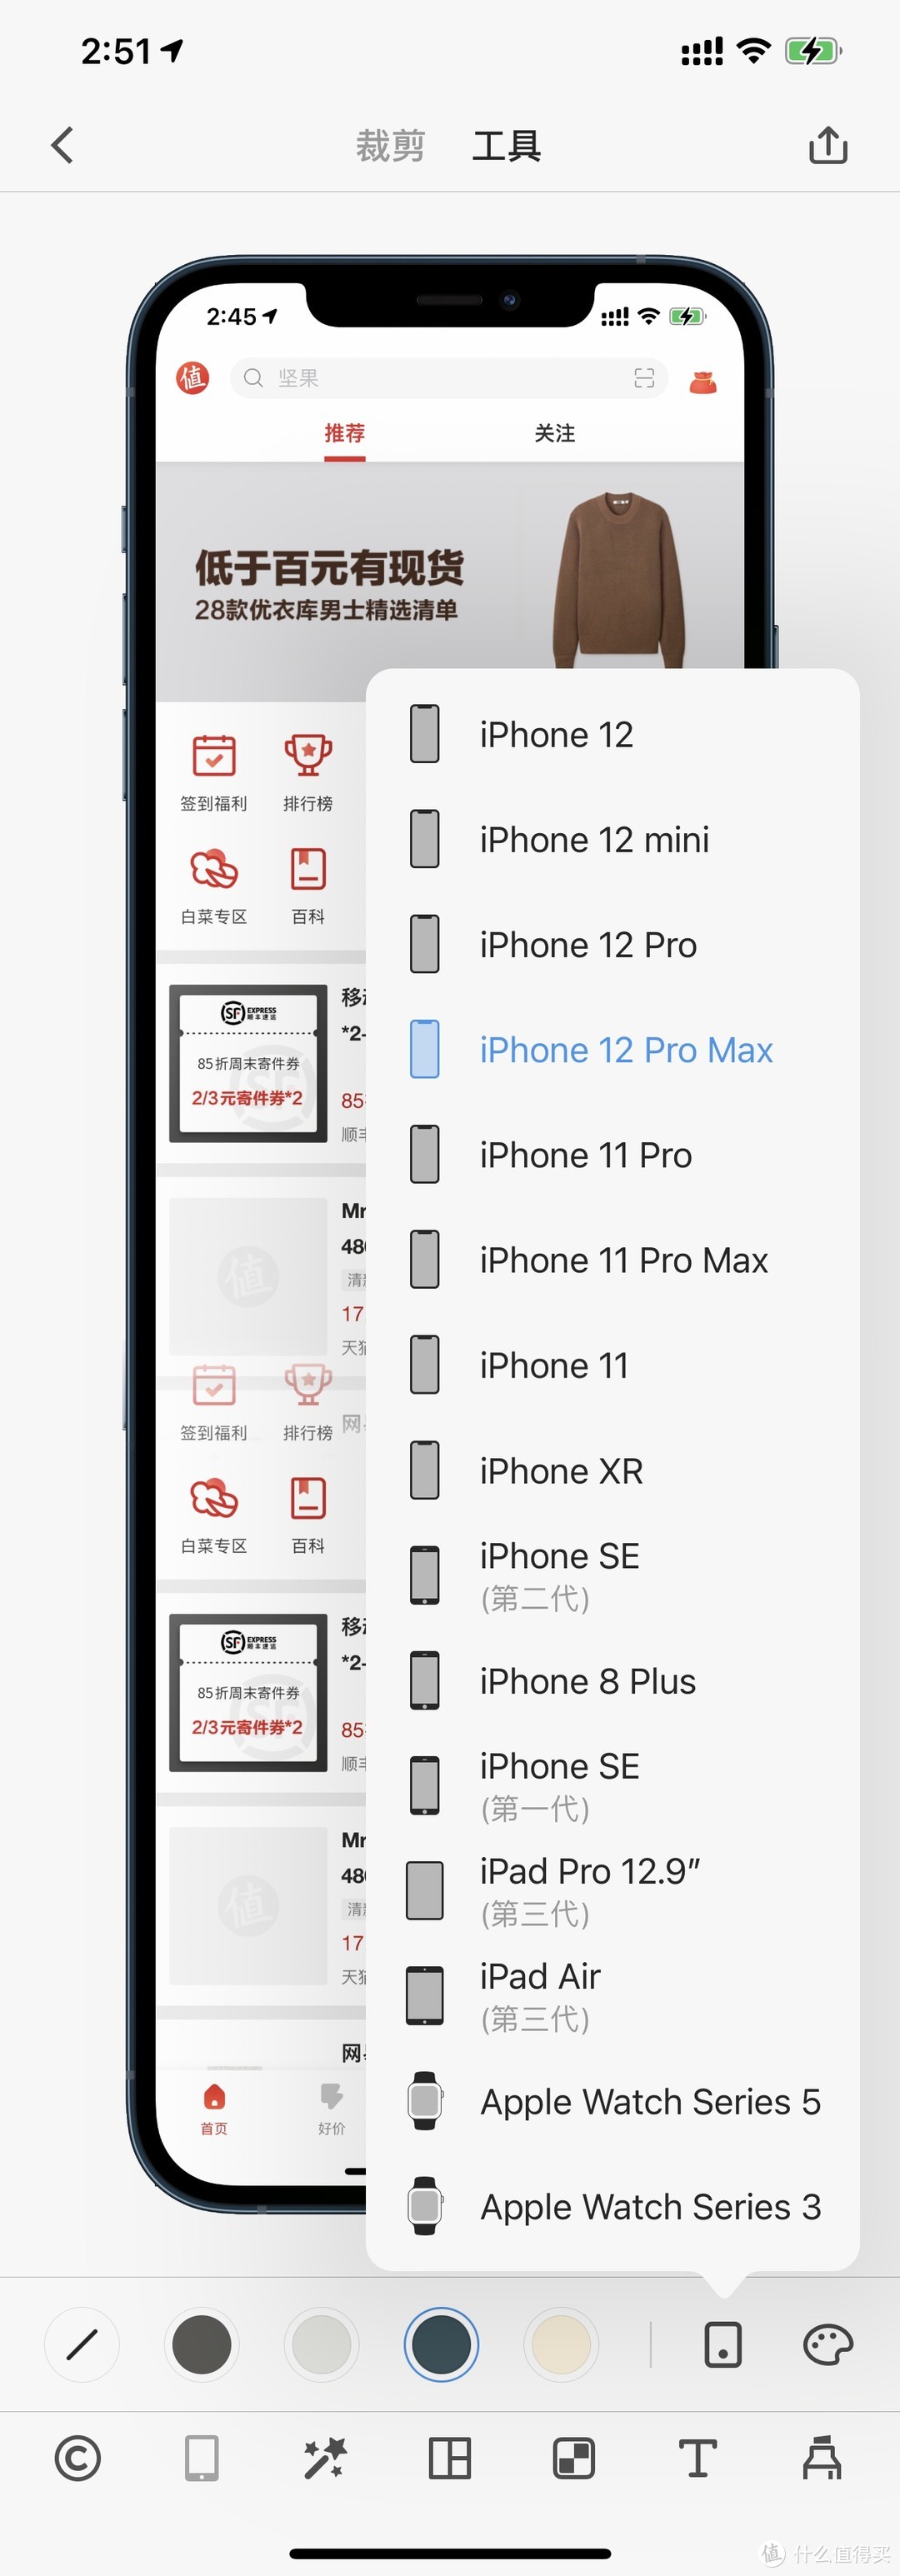 截图更优雅！几款好用的 iPhone 带壳截图 / 录屏工具